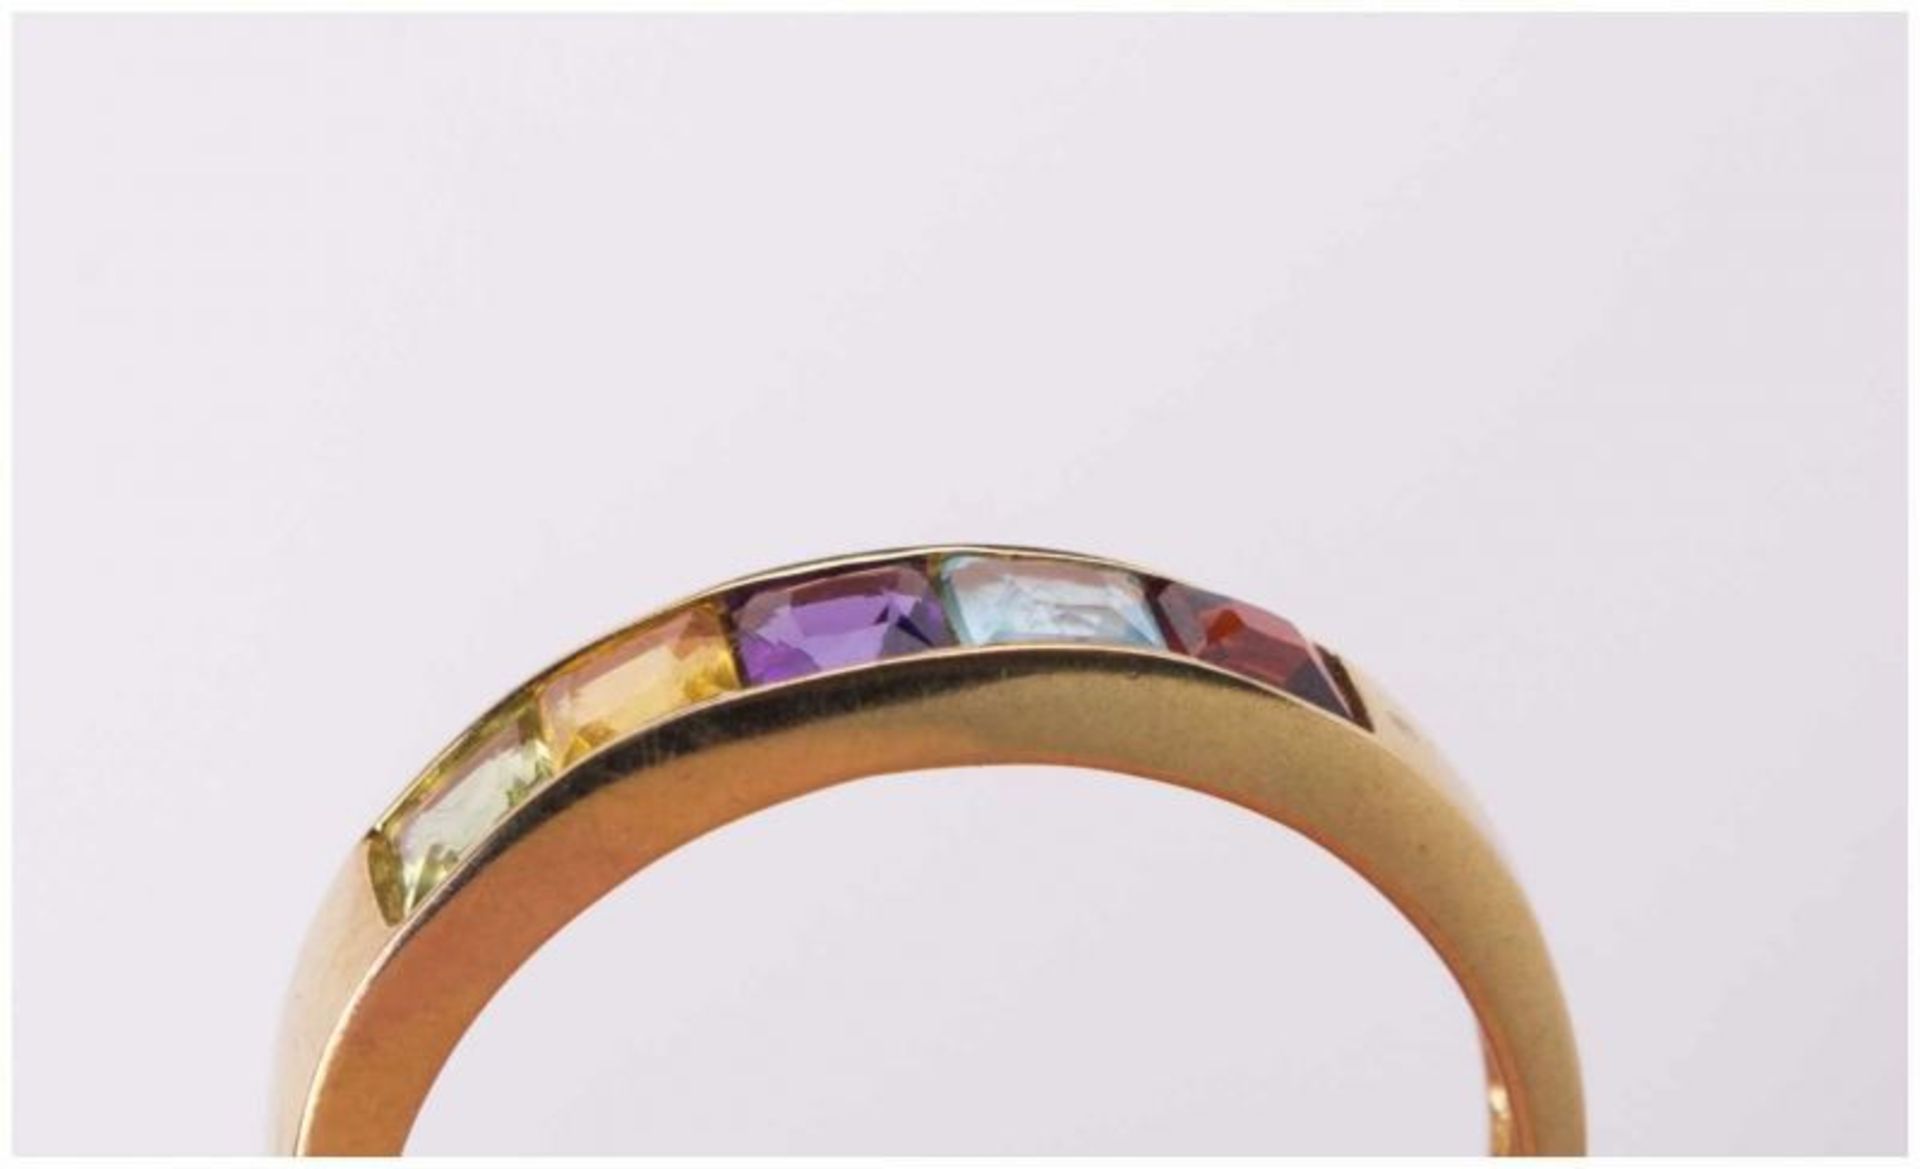 Granat-Amethist Ring / Garnet-Amethyst gold ring - GG 375/000, Gesamtgewicht ca. 1,8 [...] - Image 4 of 10